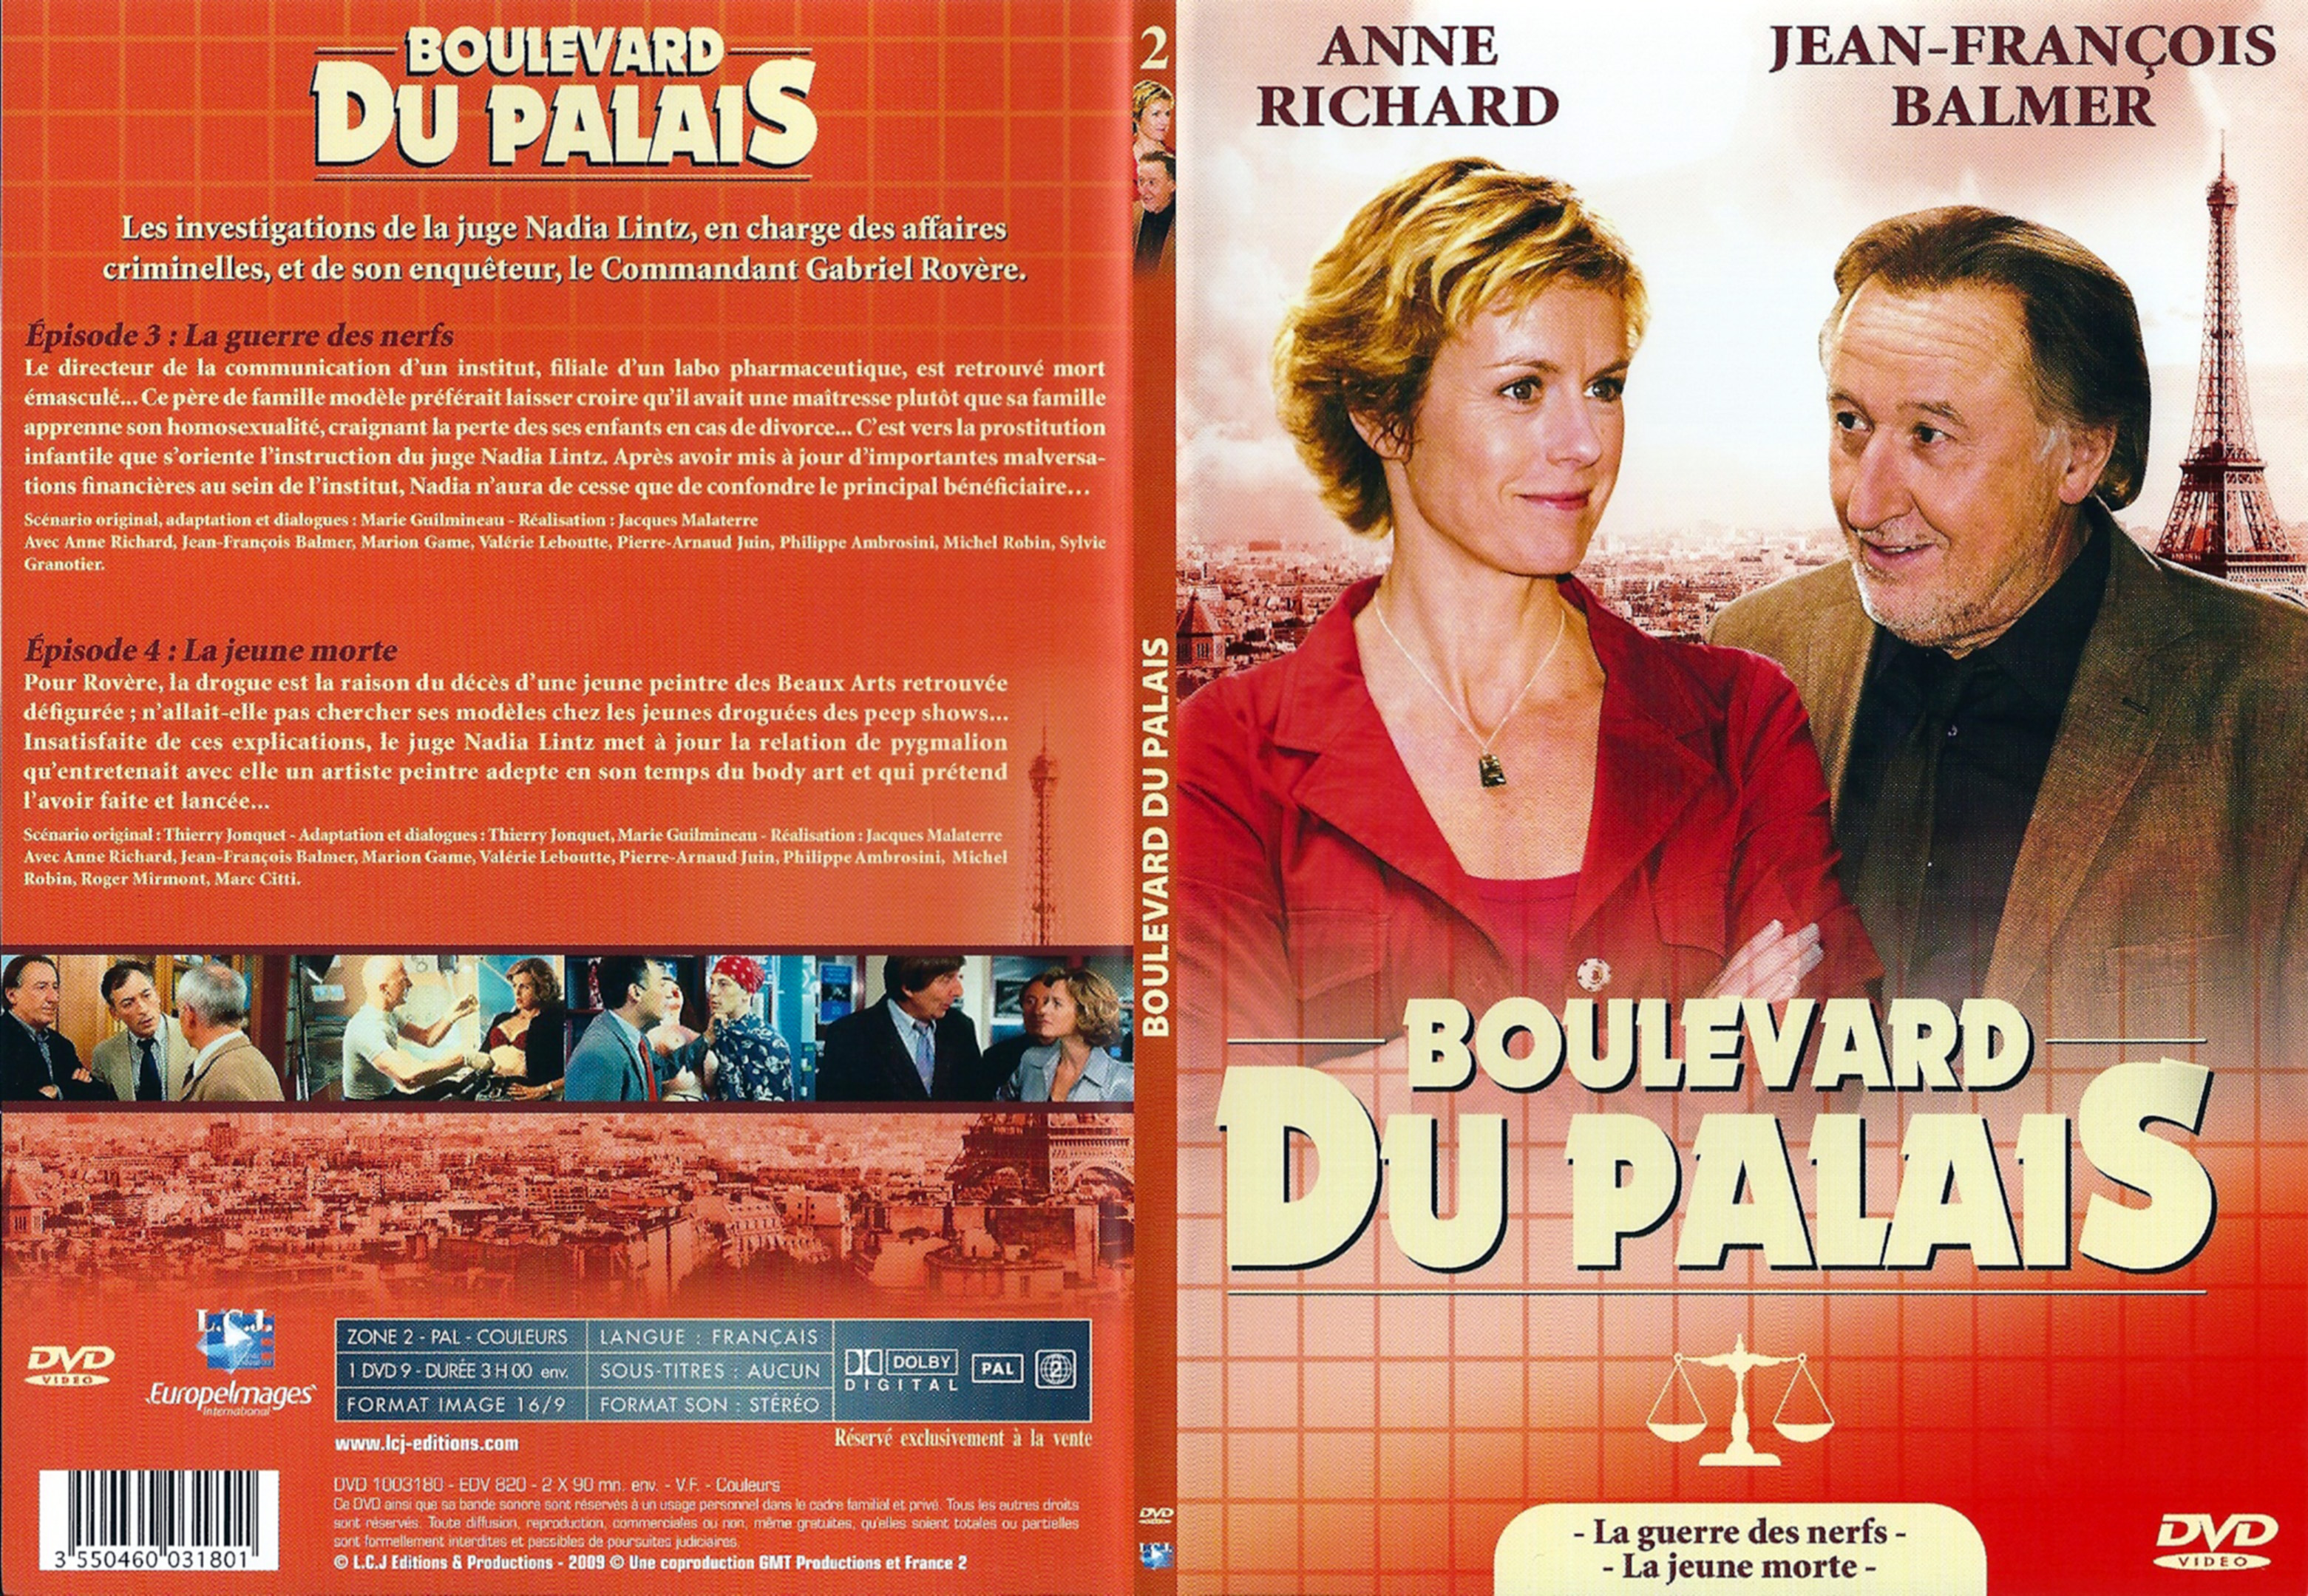 Jaquette DVD Boulevard du palais Saison 1 DVD 2